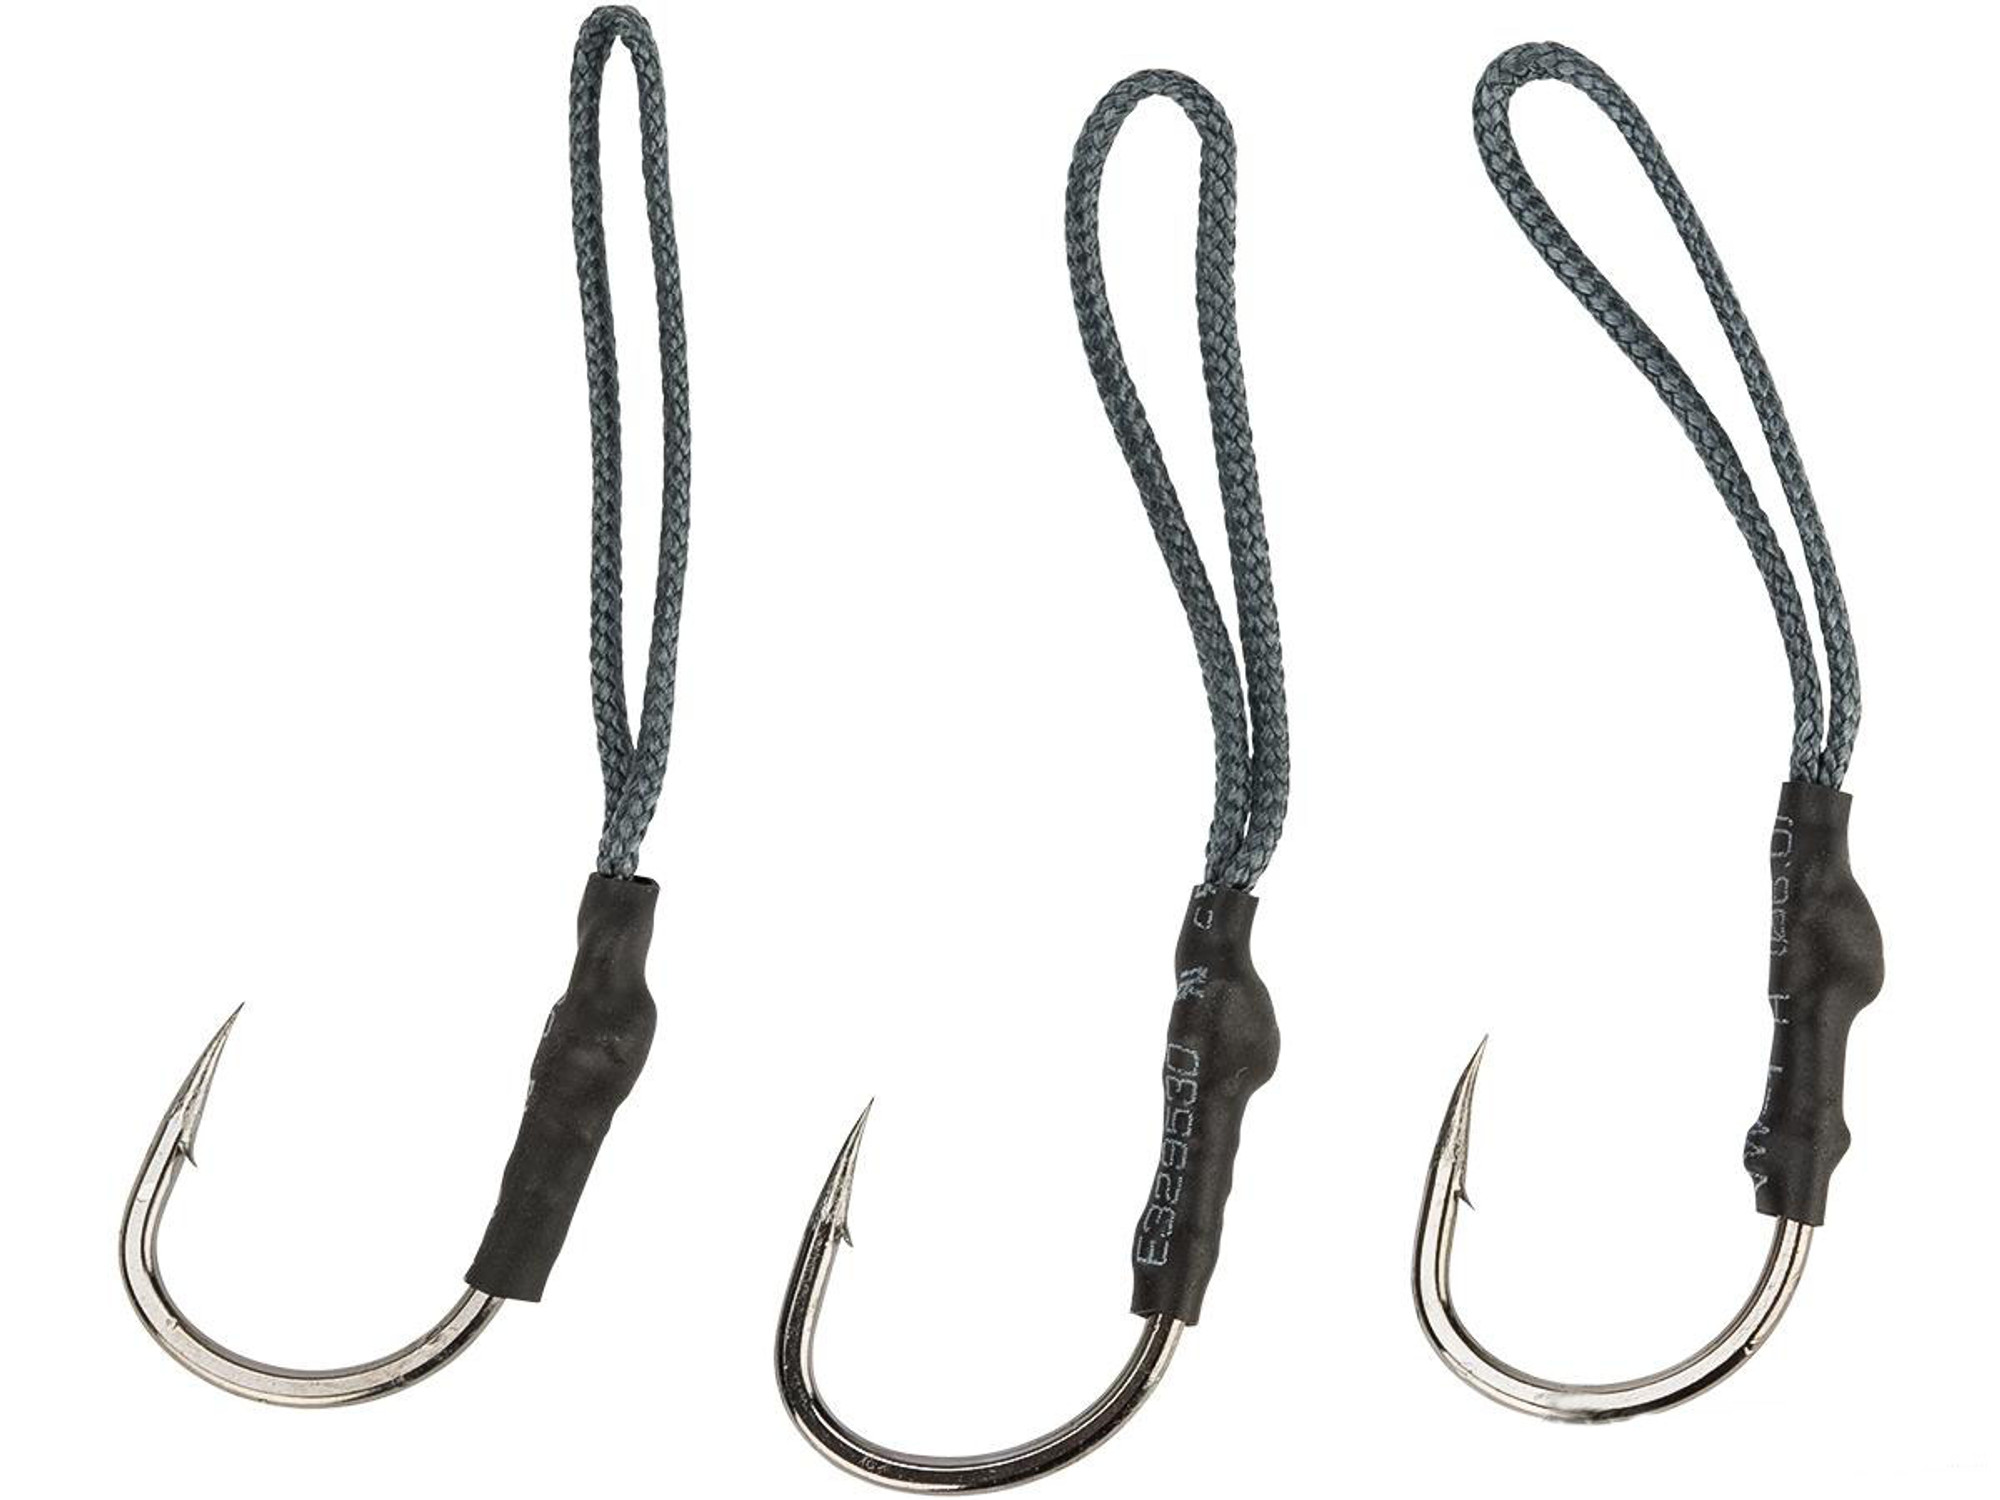 Battle Angler Jigging Fishing Assist Hook Set - Pack of 3 (Size: 3/0)